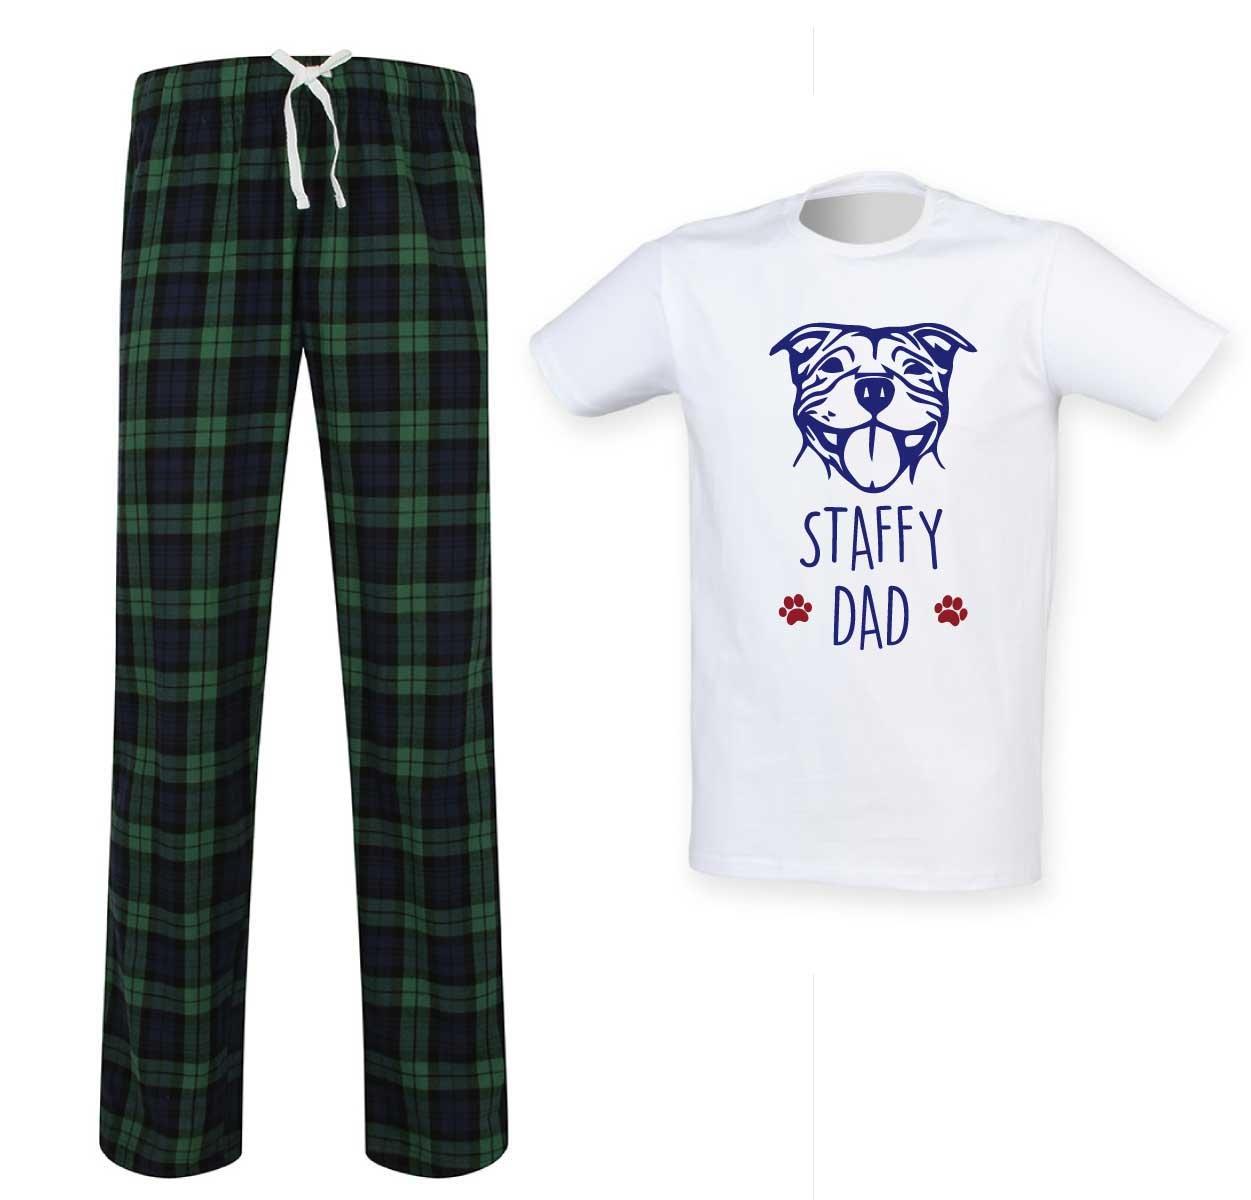 Staffy Dad Tartan Pyjama Set